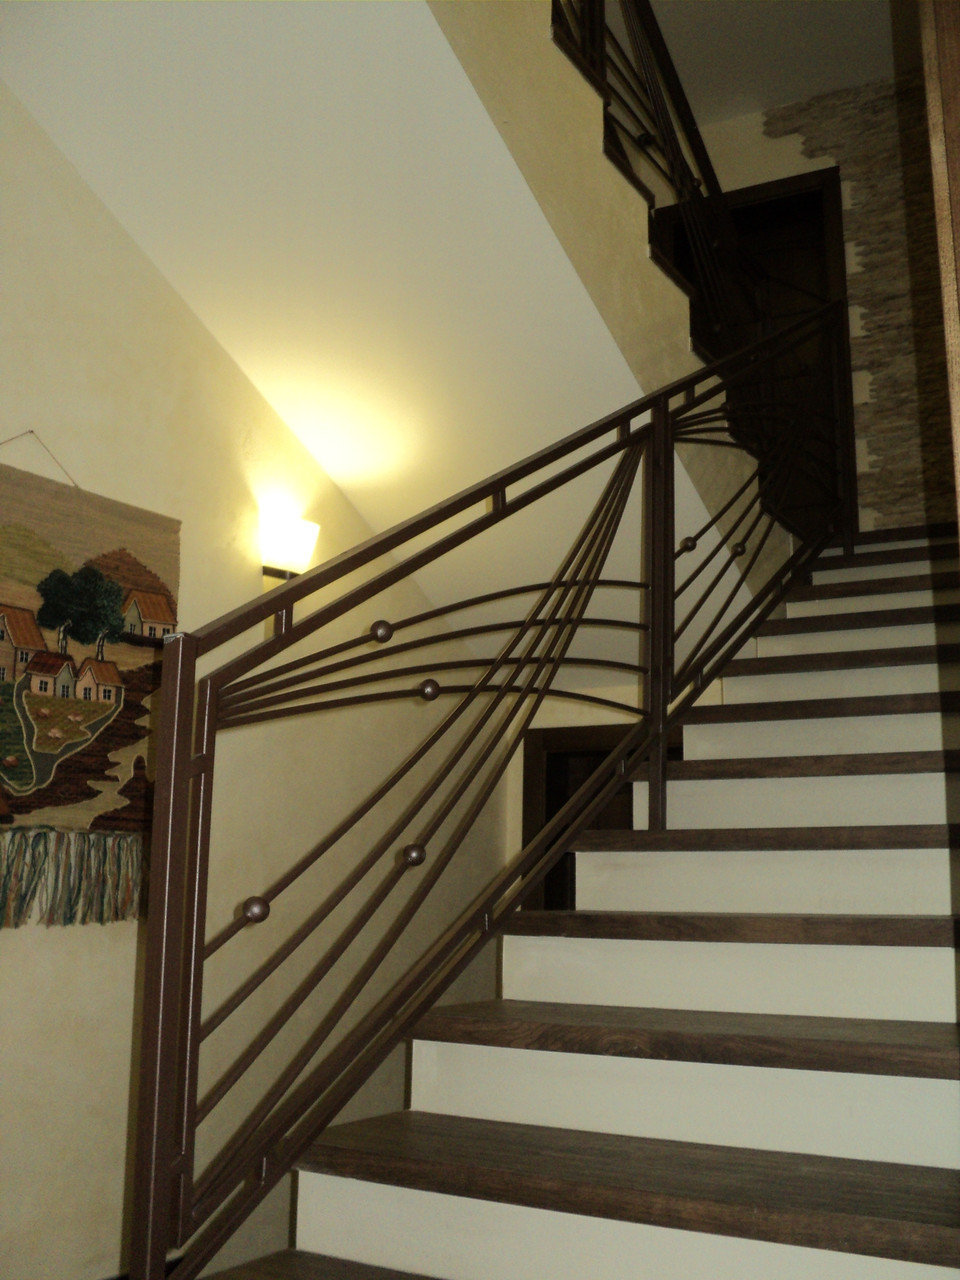 Металлические перила для лестницы в частном доме фото